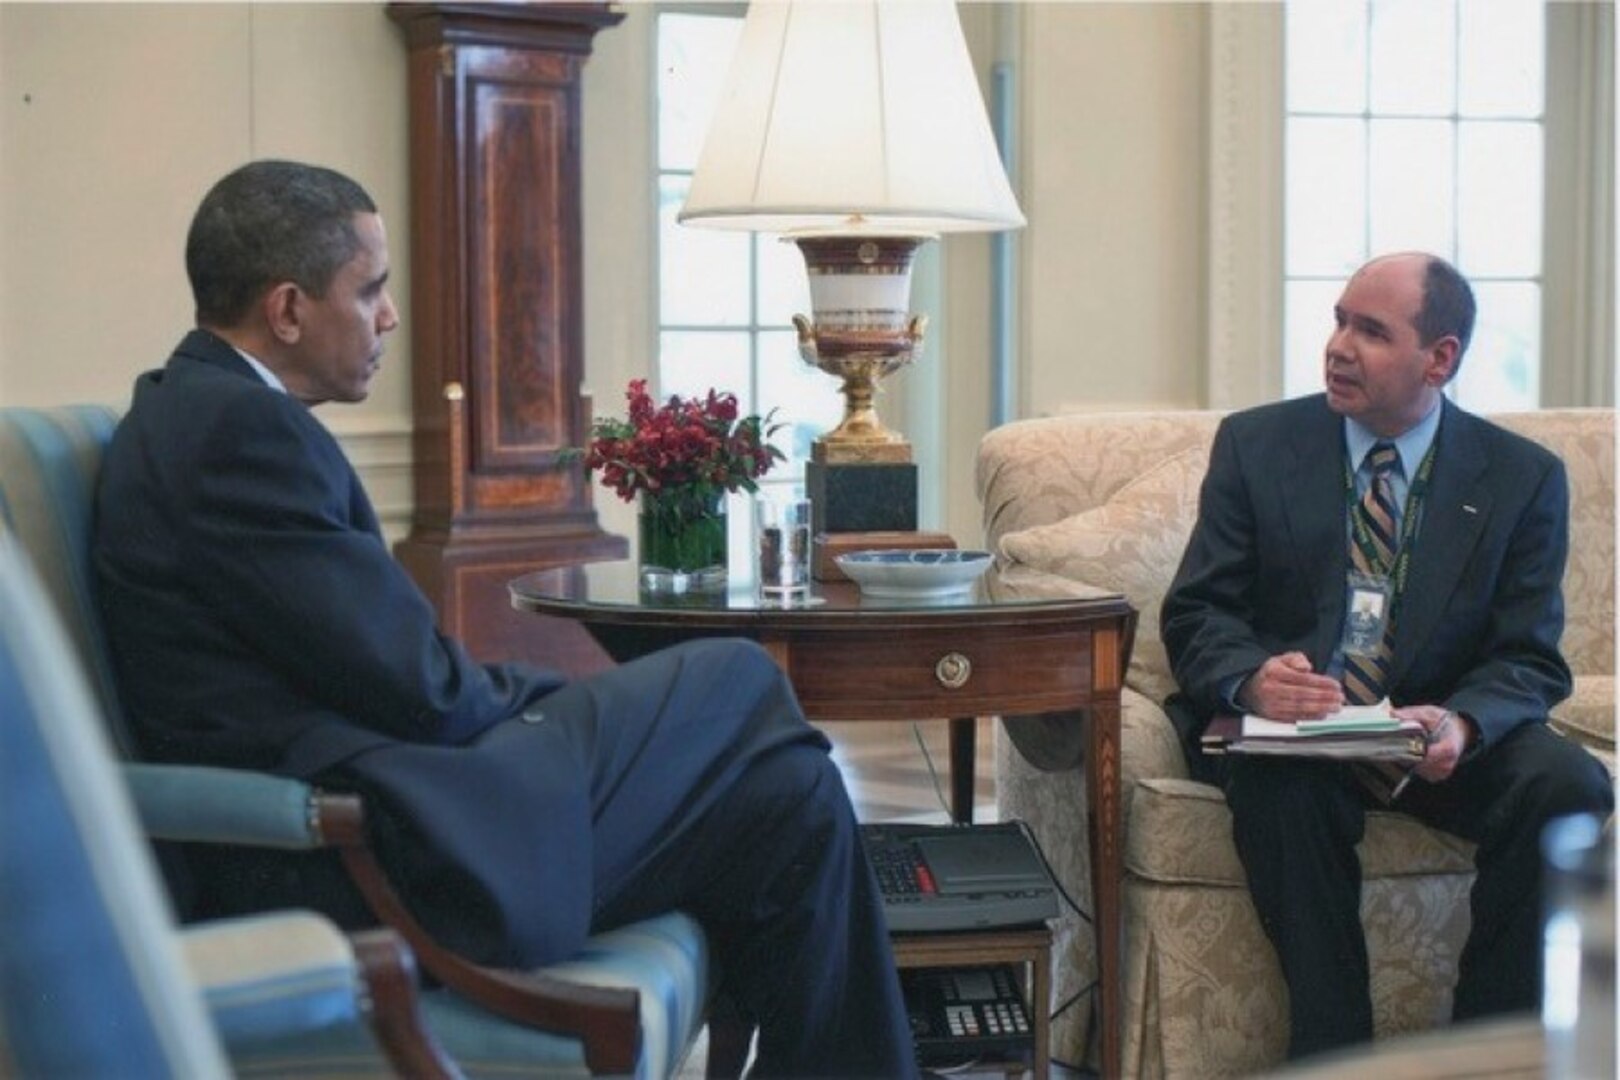 Jim Danoy briefs President Barack Obama in the Oval Office in 2010